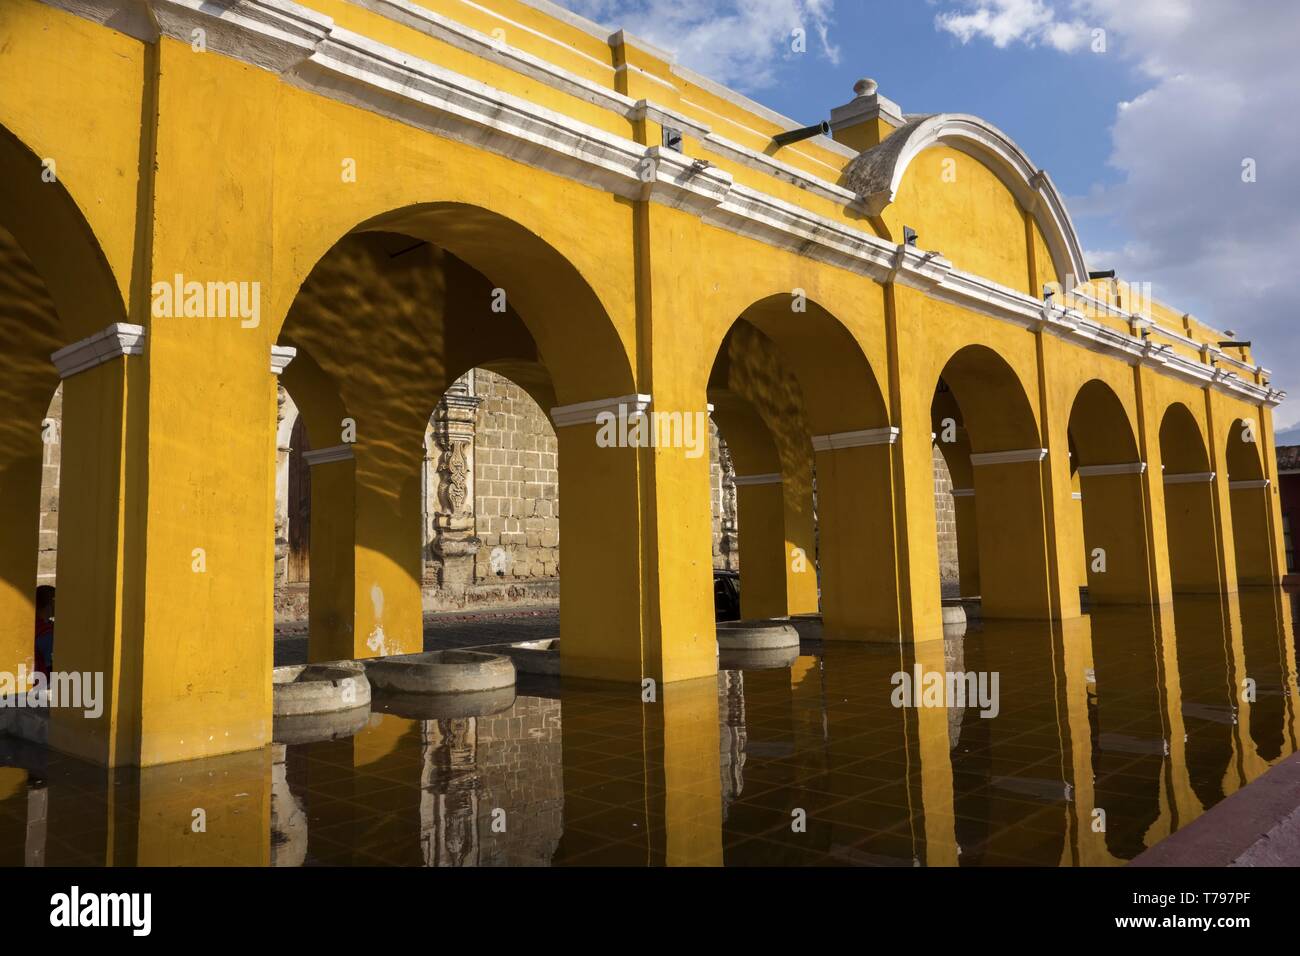 Public Laundry Fountain, Tanque lavadero el Parque la Union, with Spanish Colonial Architecture Yellow Arches in Old City Antigua Guatemala Stock Photo